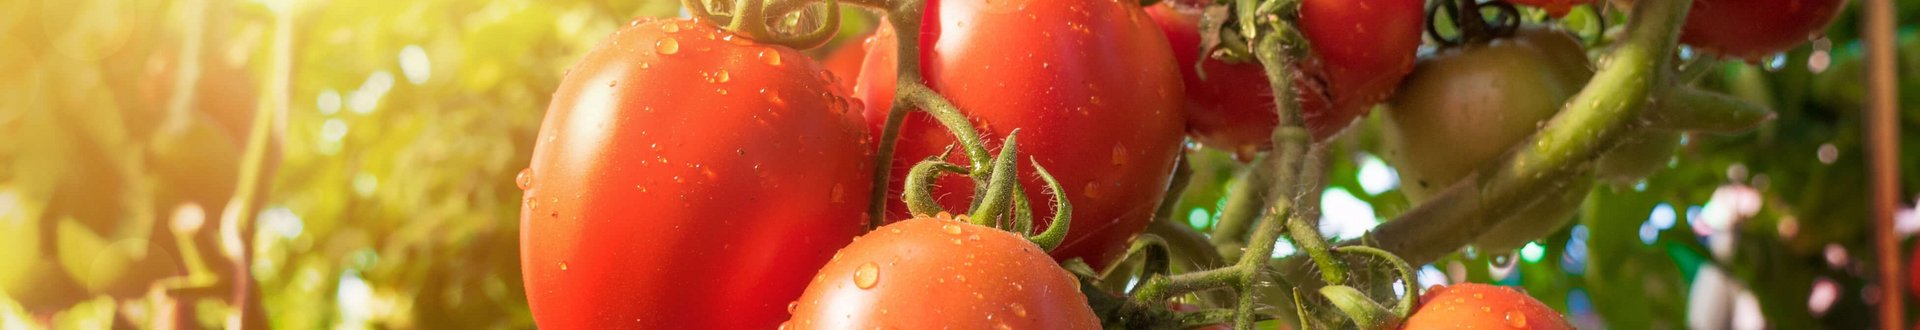 Reife Tomaten noch an der Pflanze hängend